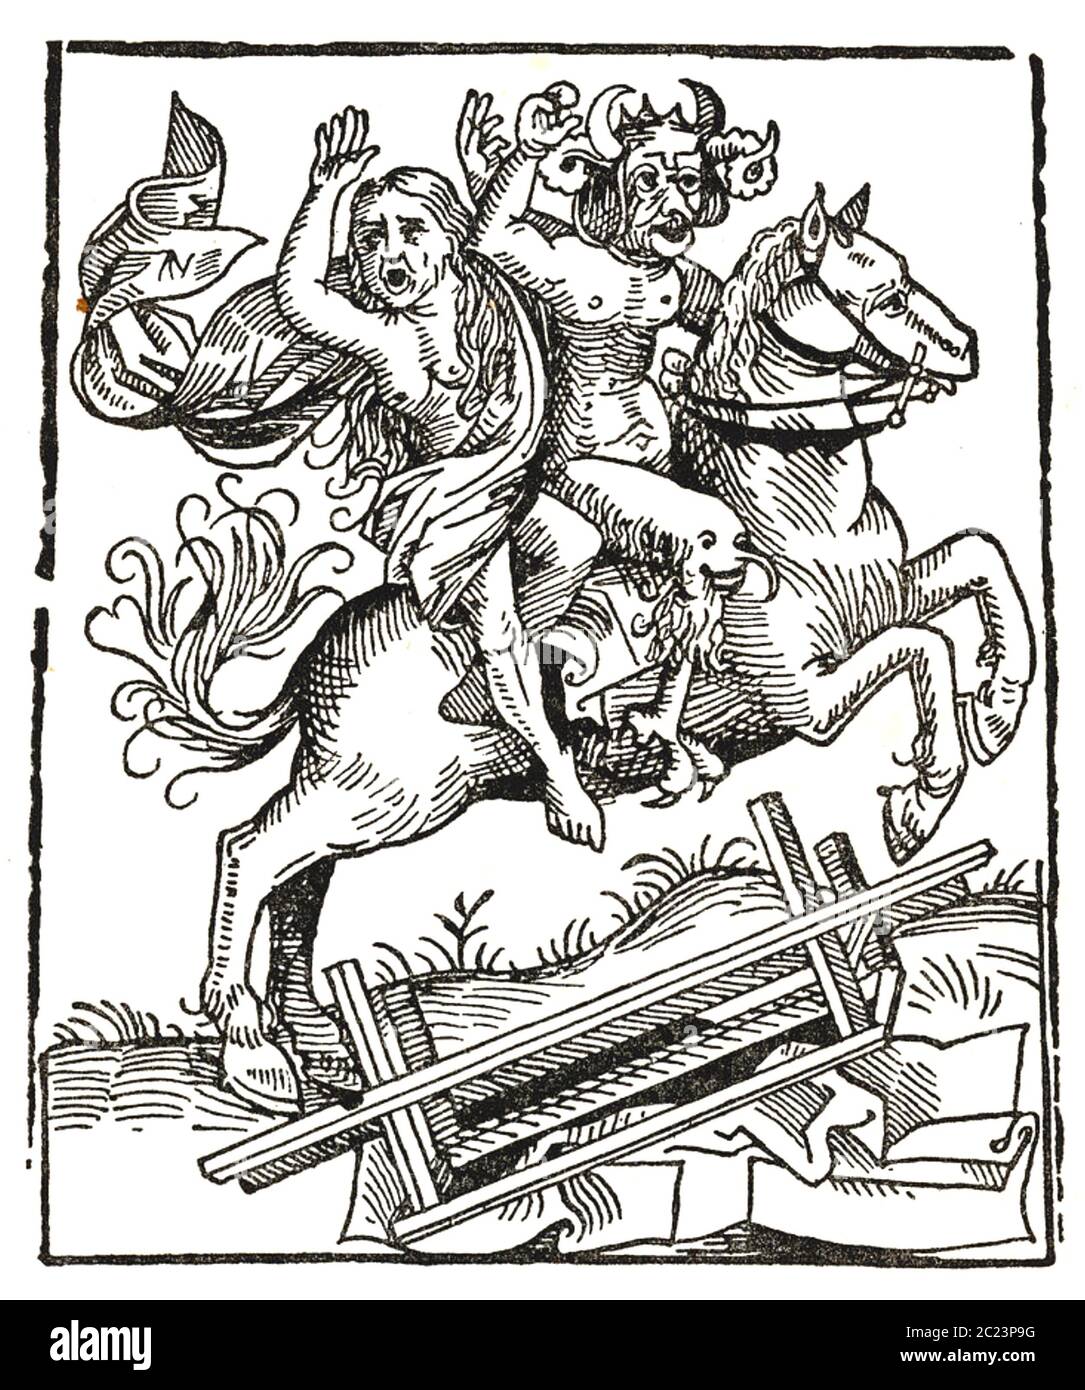 HEXE VON BERKELEY mittelalterliche englische Legende. Holzschnitt aus der Nürnberger Chronik, der zeigt, wie die Hexe vom Teufel fortgetragen wird. Stockfoto